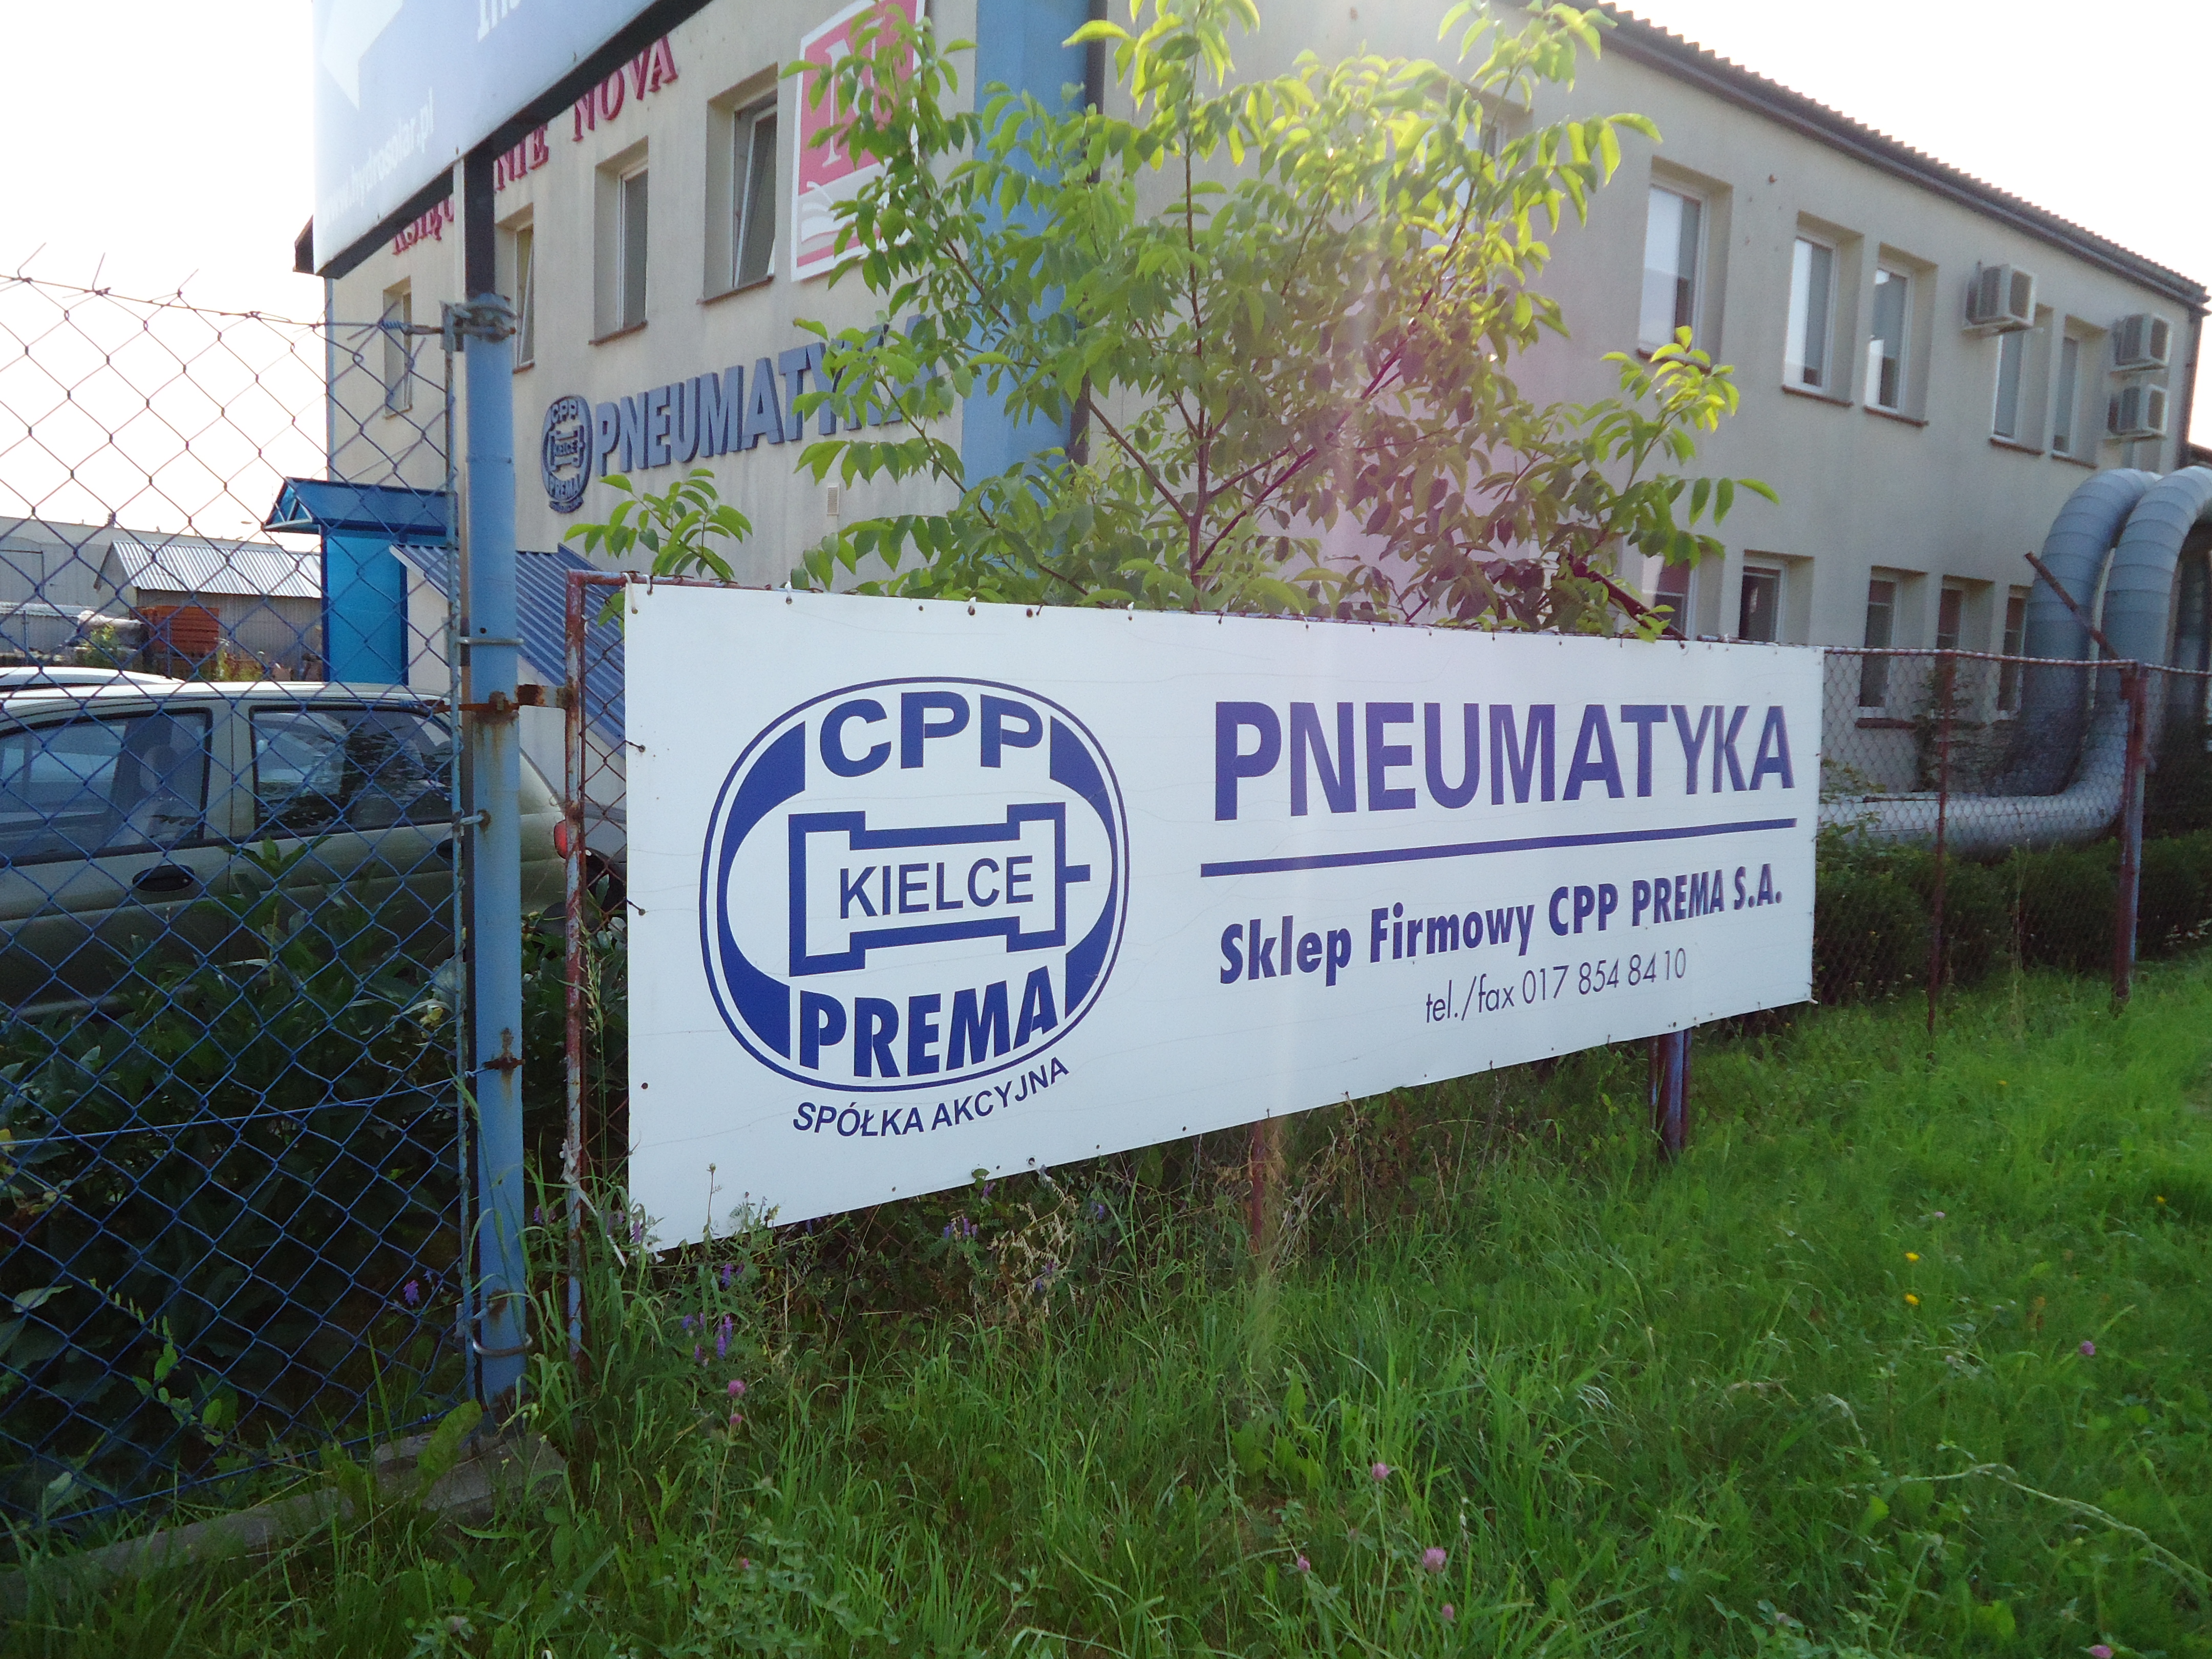 Centrum Produkcyjne Pneumatyki PREMA SA,PNEUMATYKA: siłowniki pneumatyczne